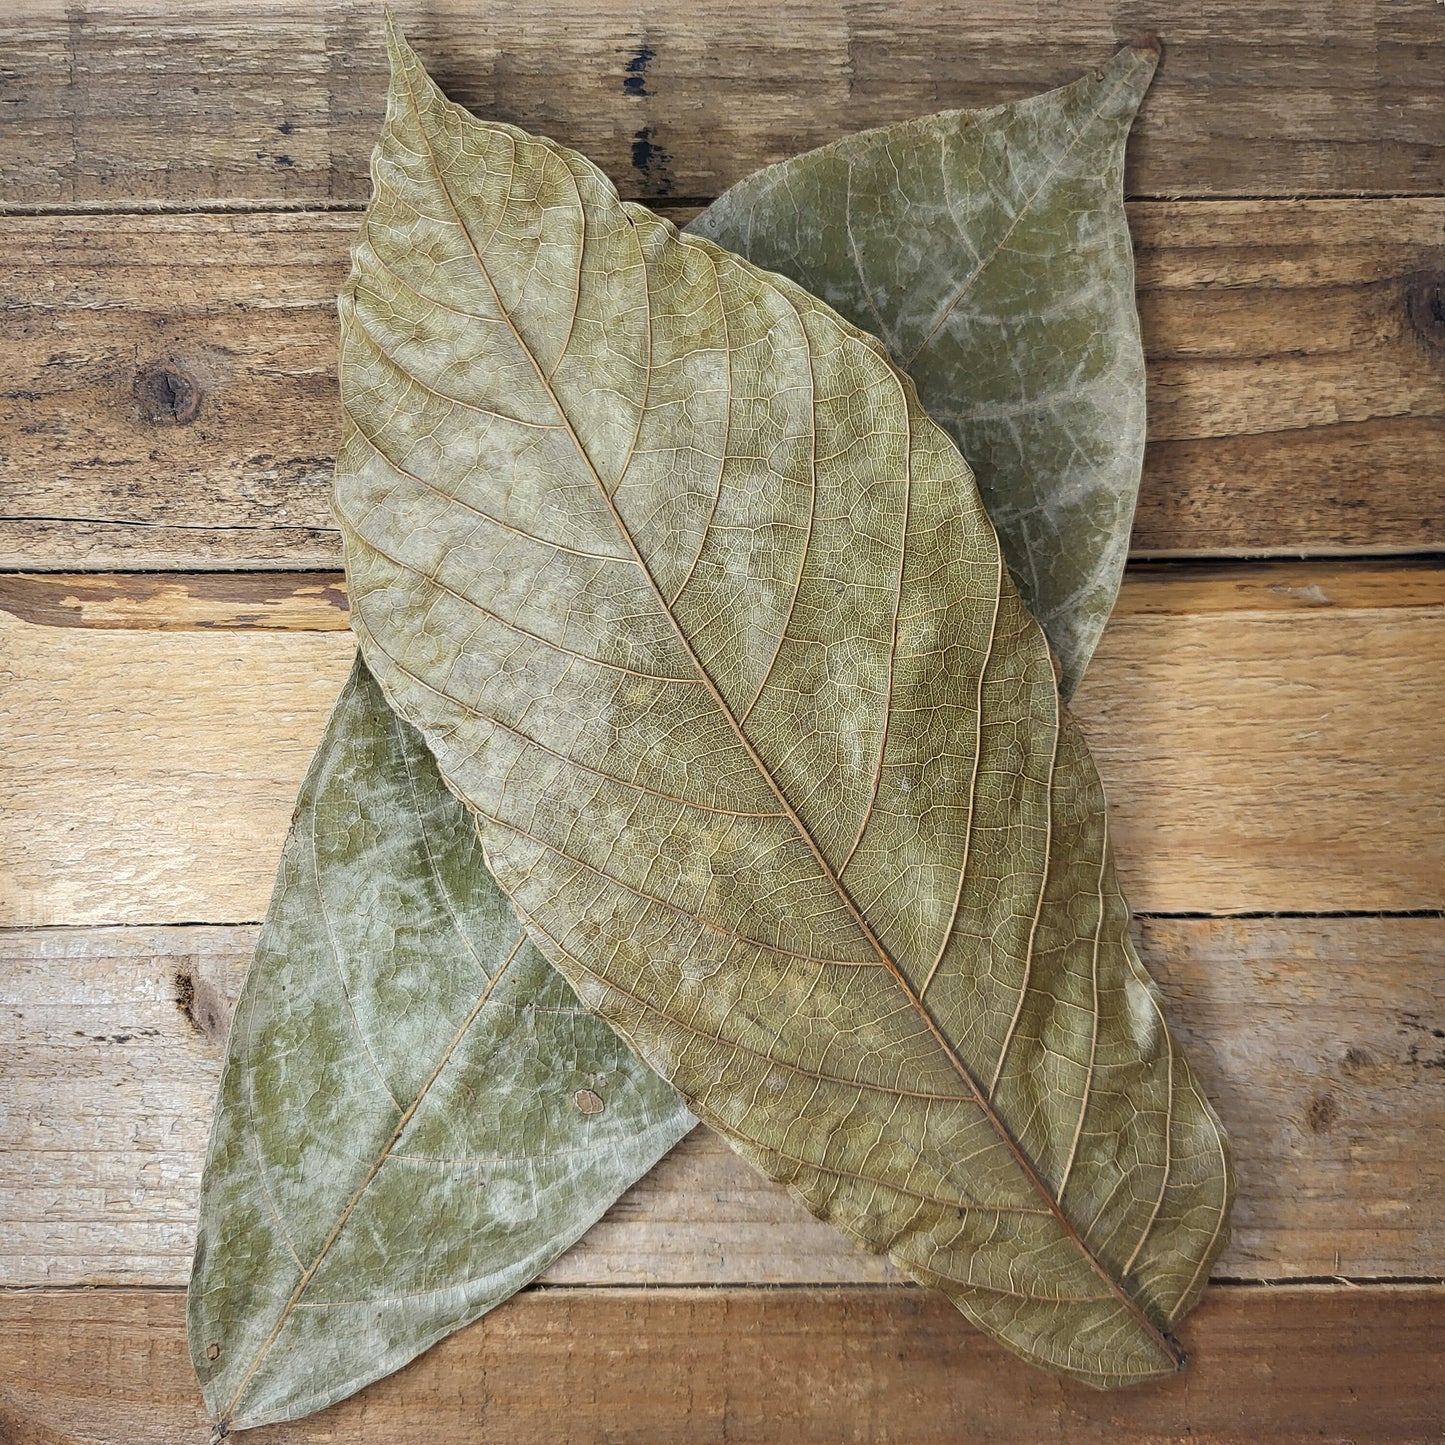 Cocoa leaves